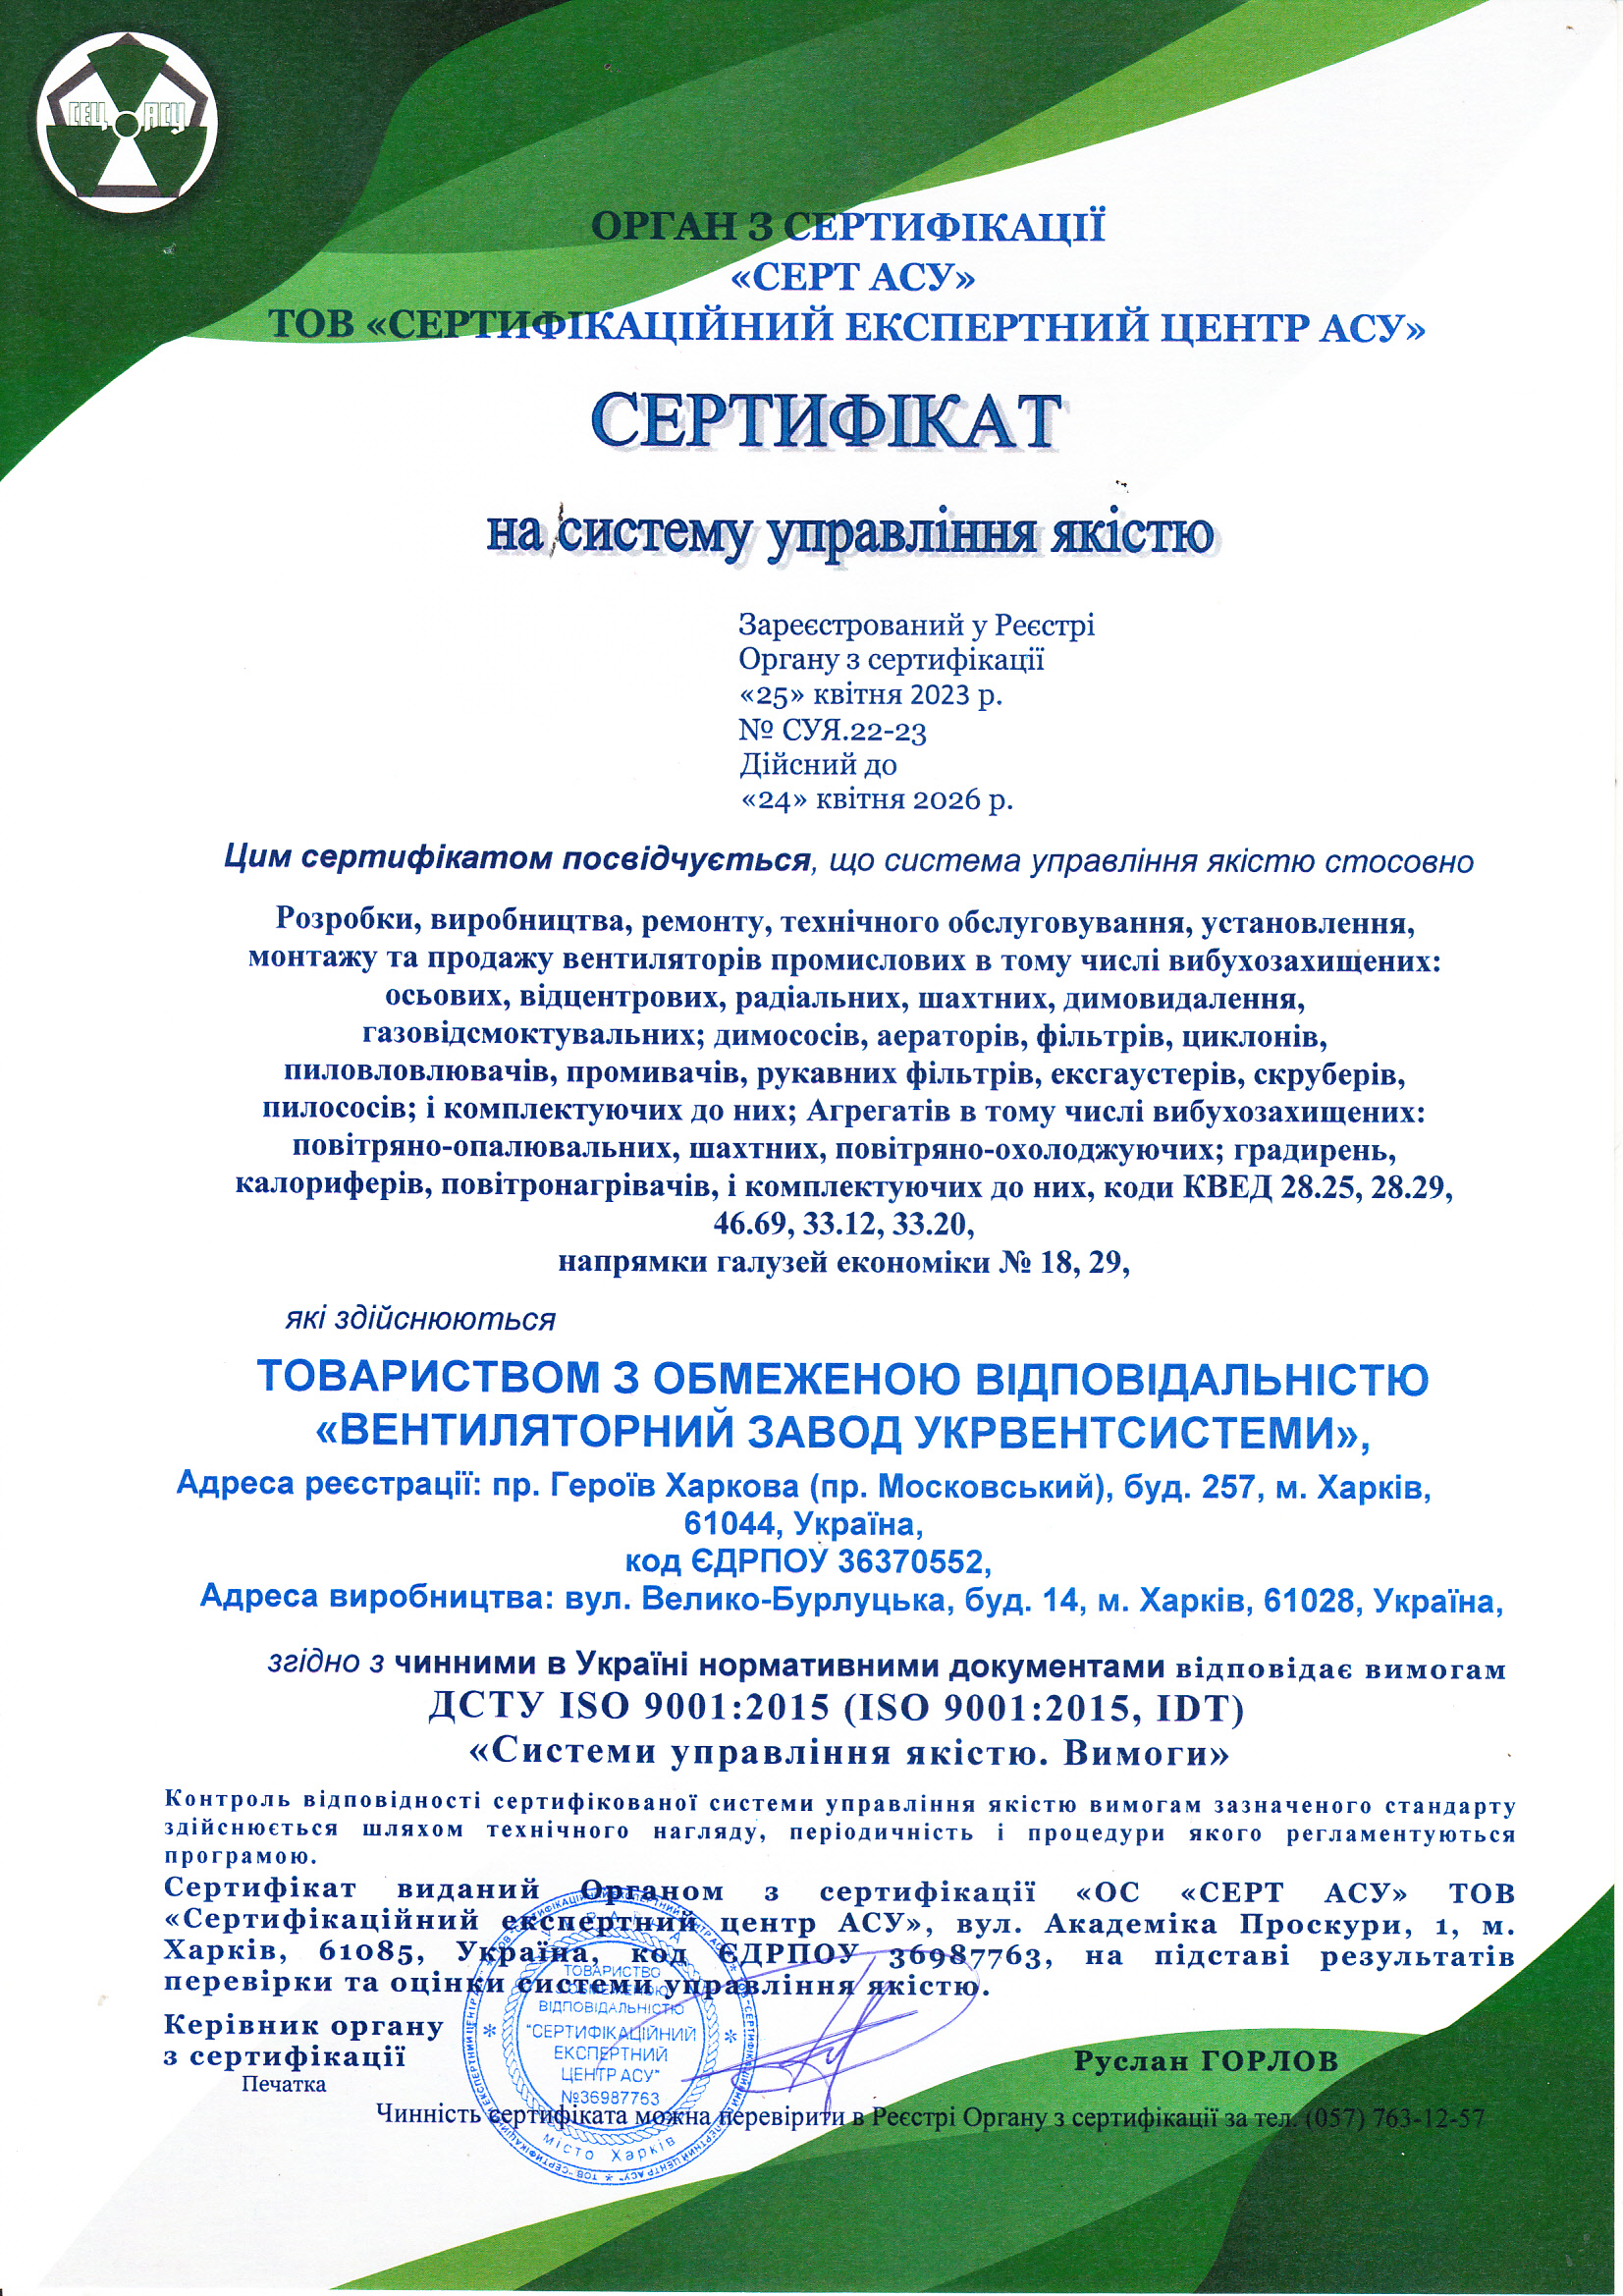 Сертифікат на систему управління якістю - ДСТУ ISO 9001:2015, IDT